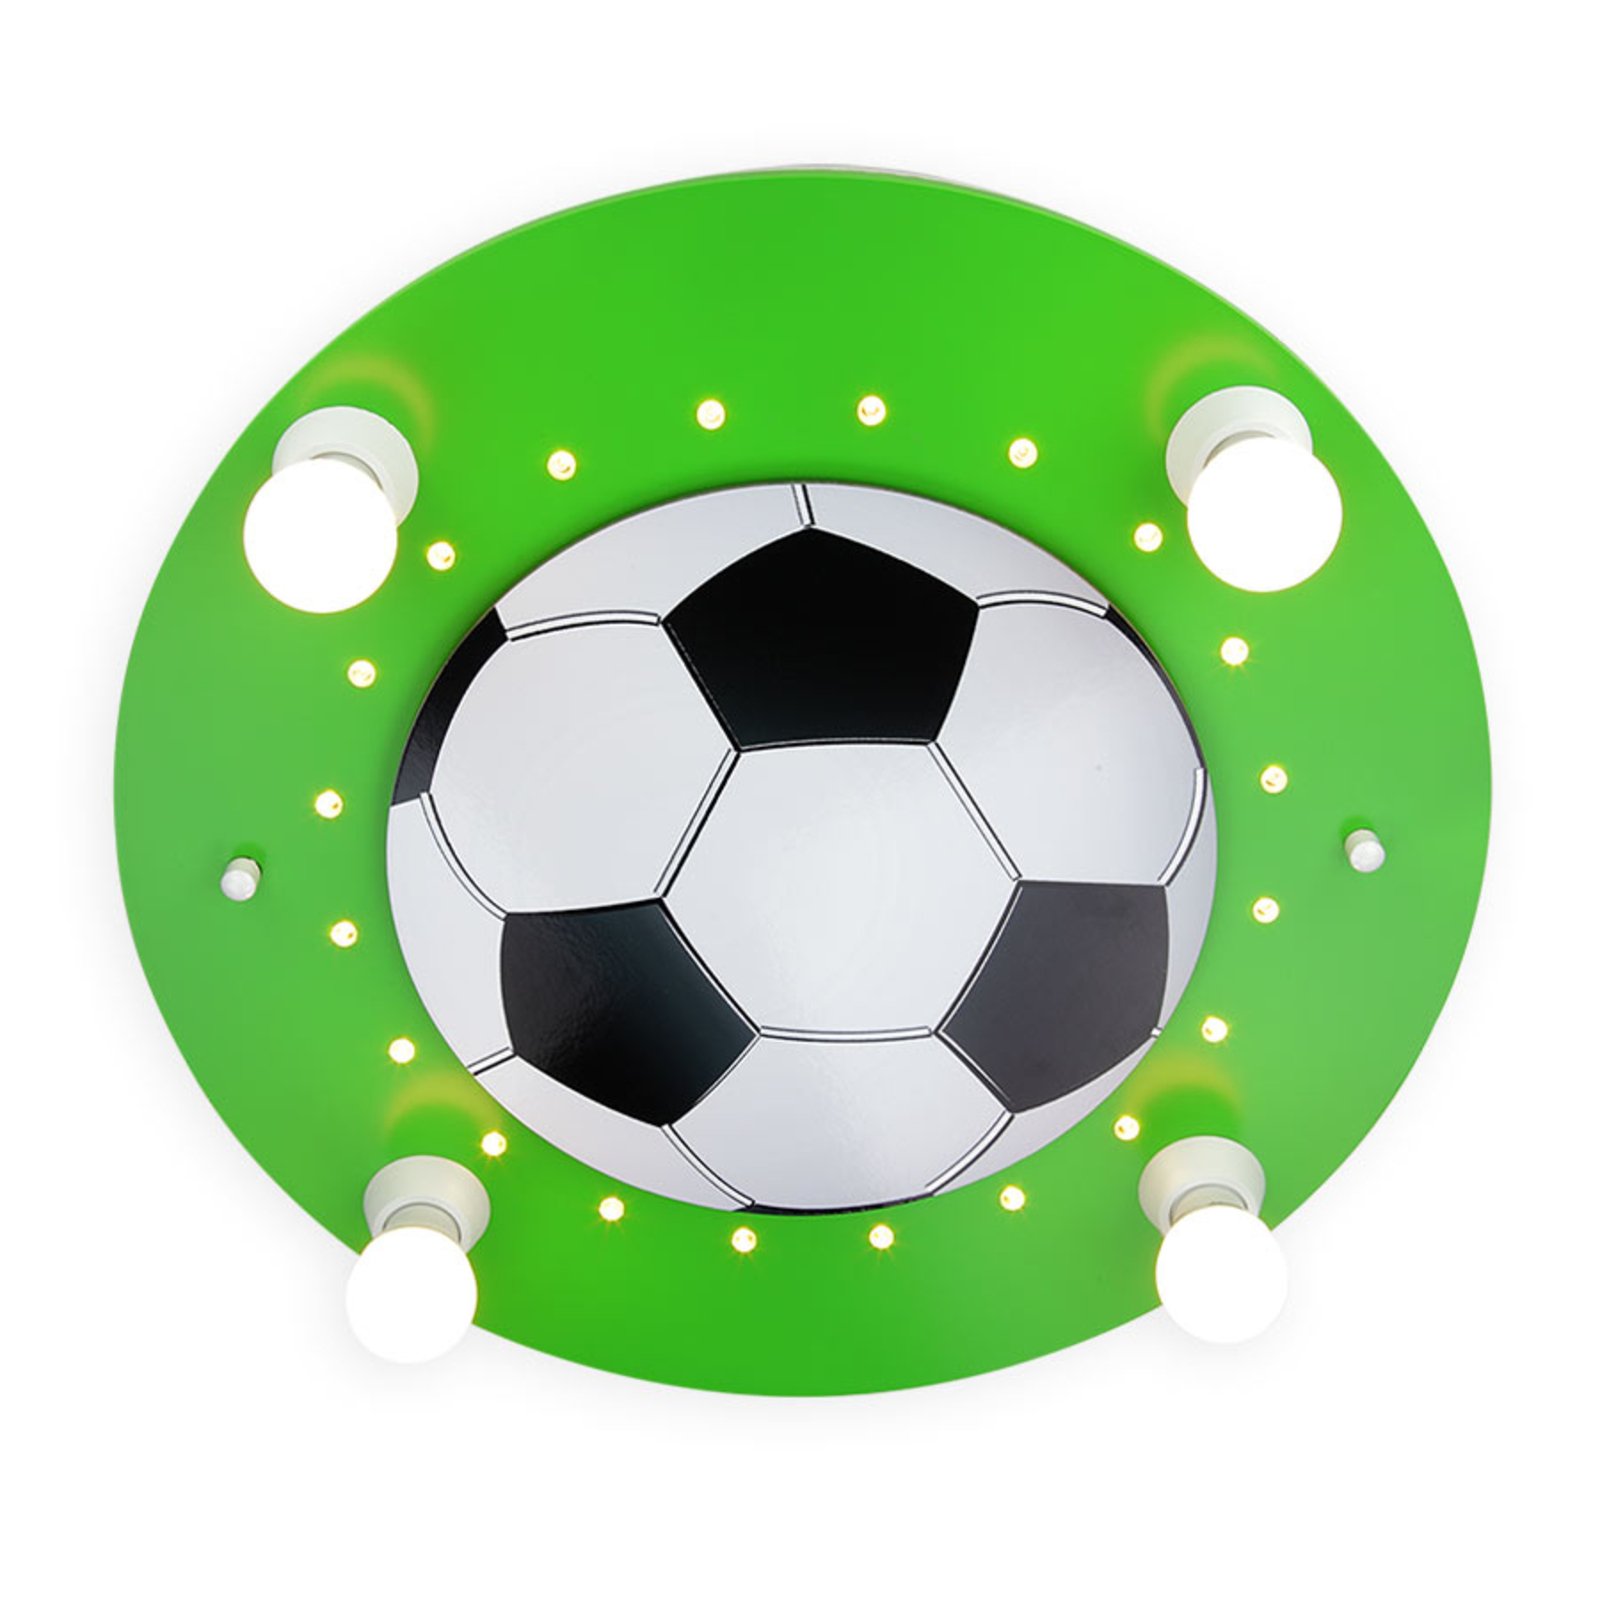 Lampa sufitowa Piłka nożna, 4-pkt. zielono-biała